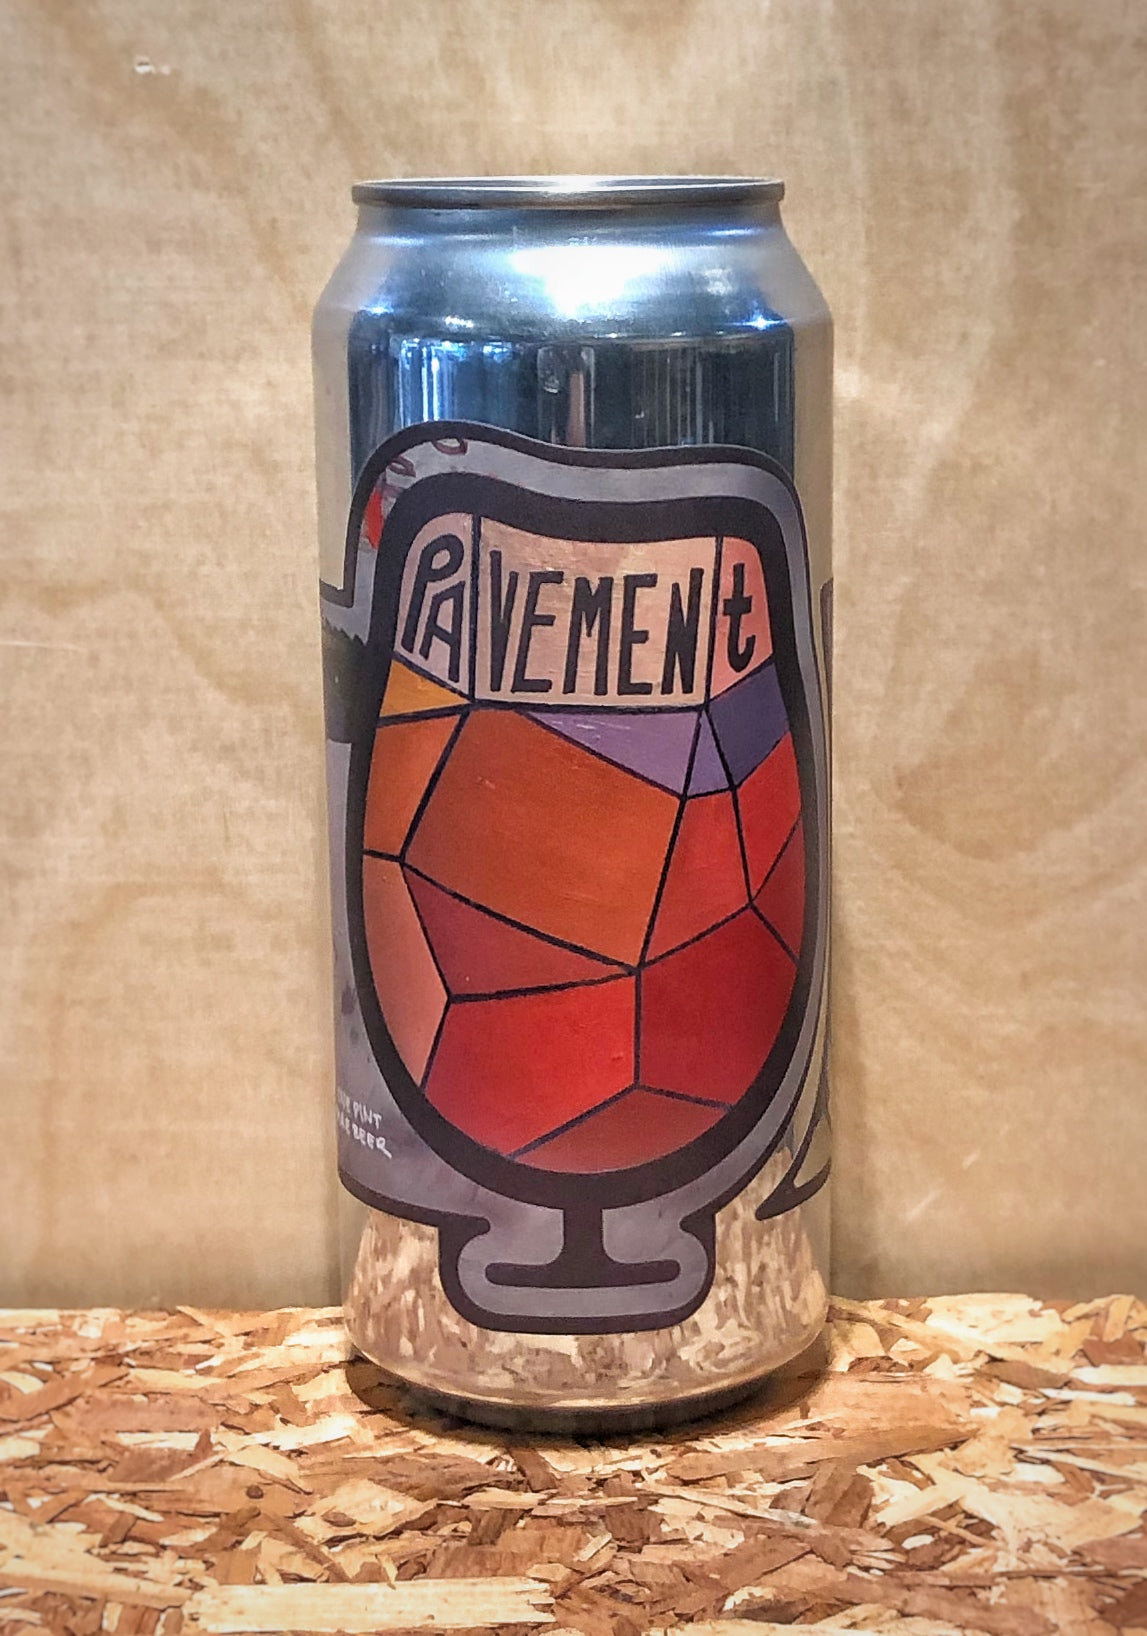 Foam Brewers 'Pavement' Double India Pale Ale (Burlington, VT)